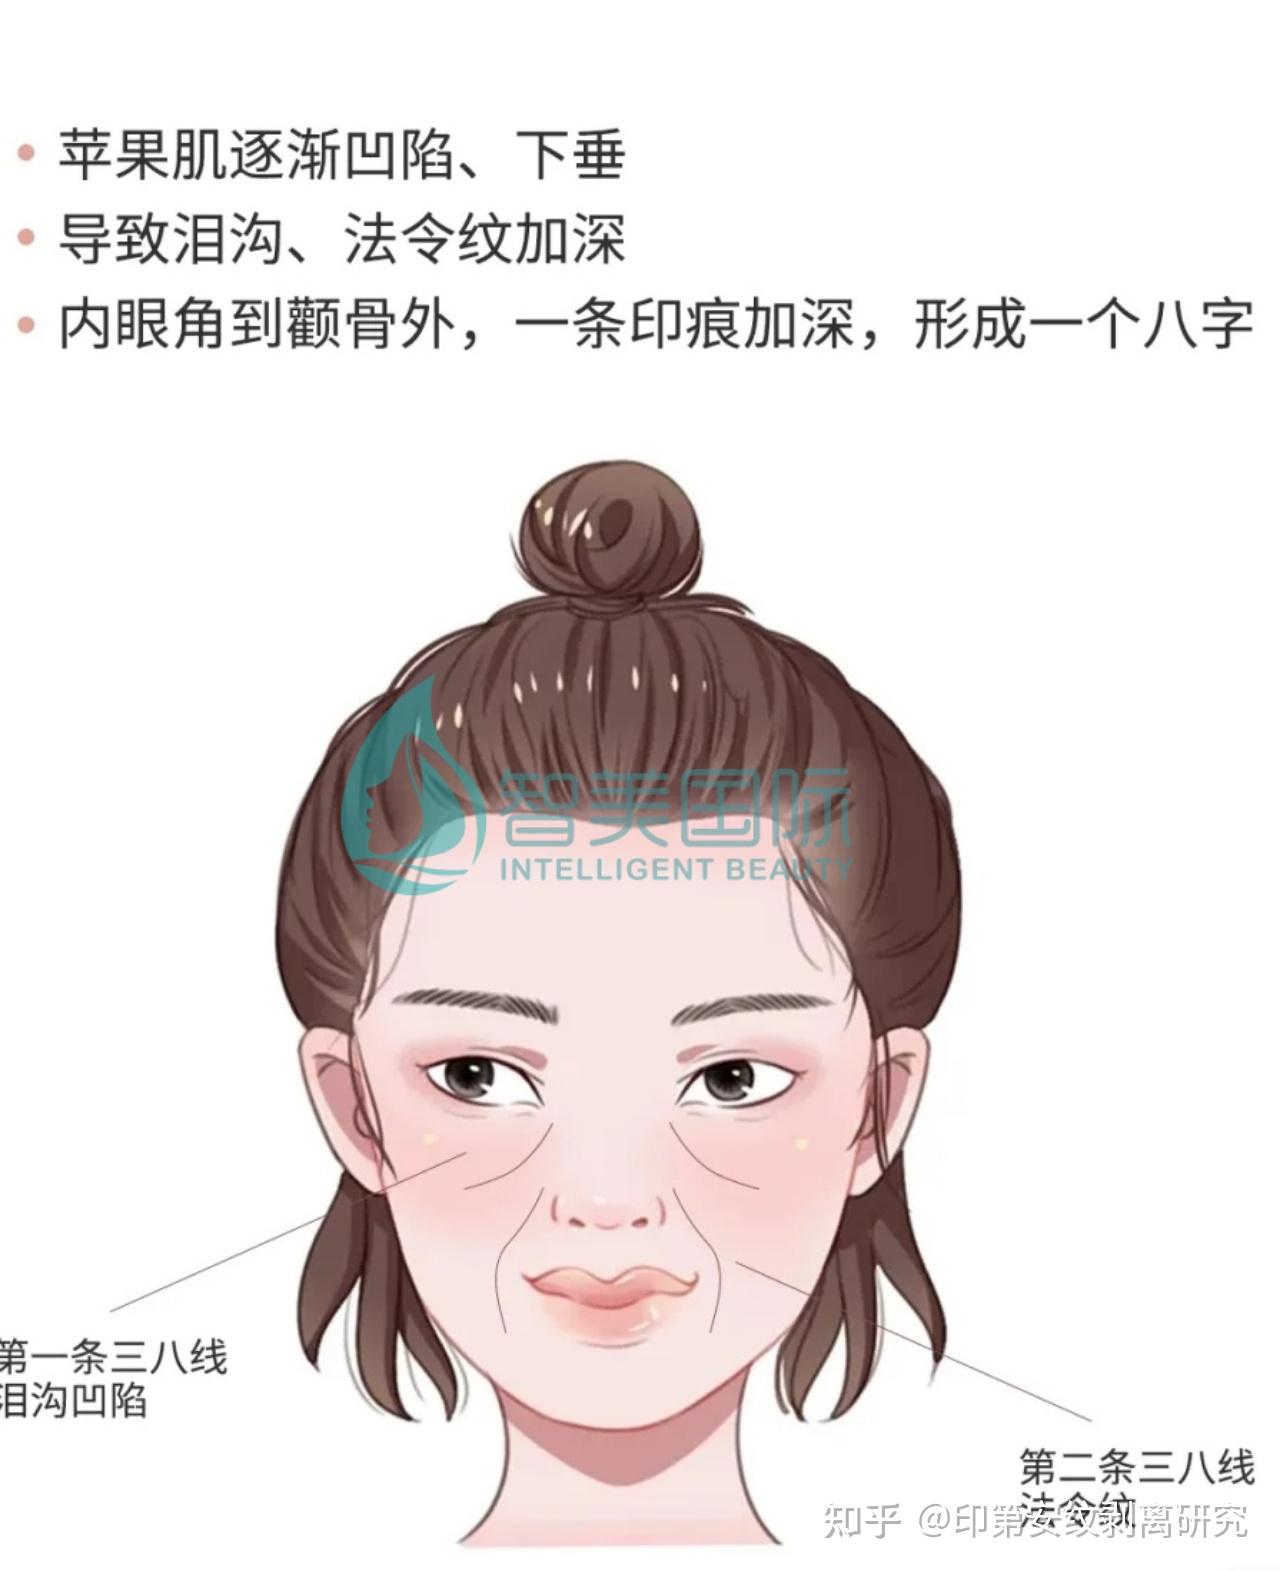 【面部轮廓整形诊疗指南 07】 北京&成都八大处颧骨内推 下颌角手术 颏部手术后肿胀期及头套佩戴 - 知乎